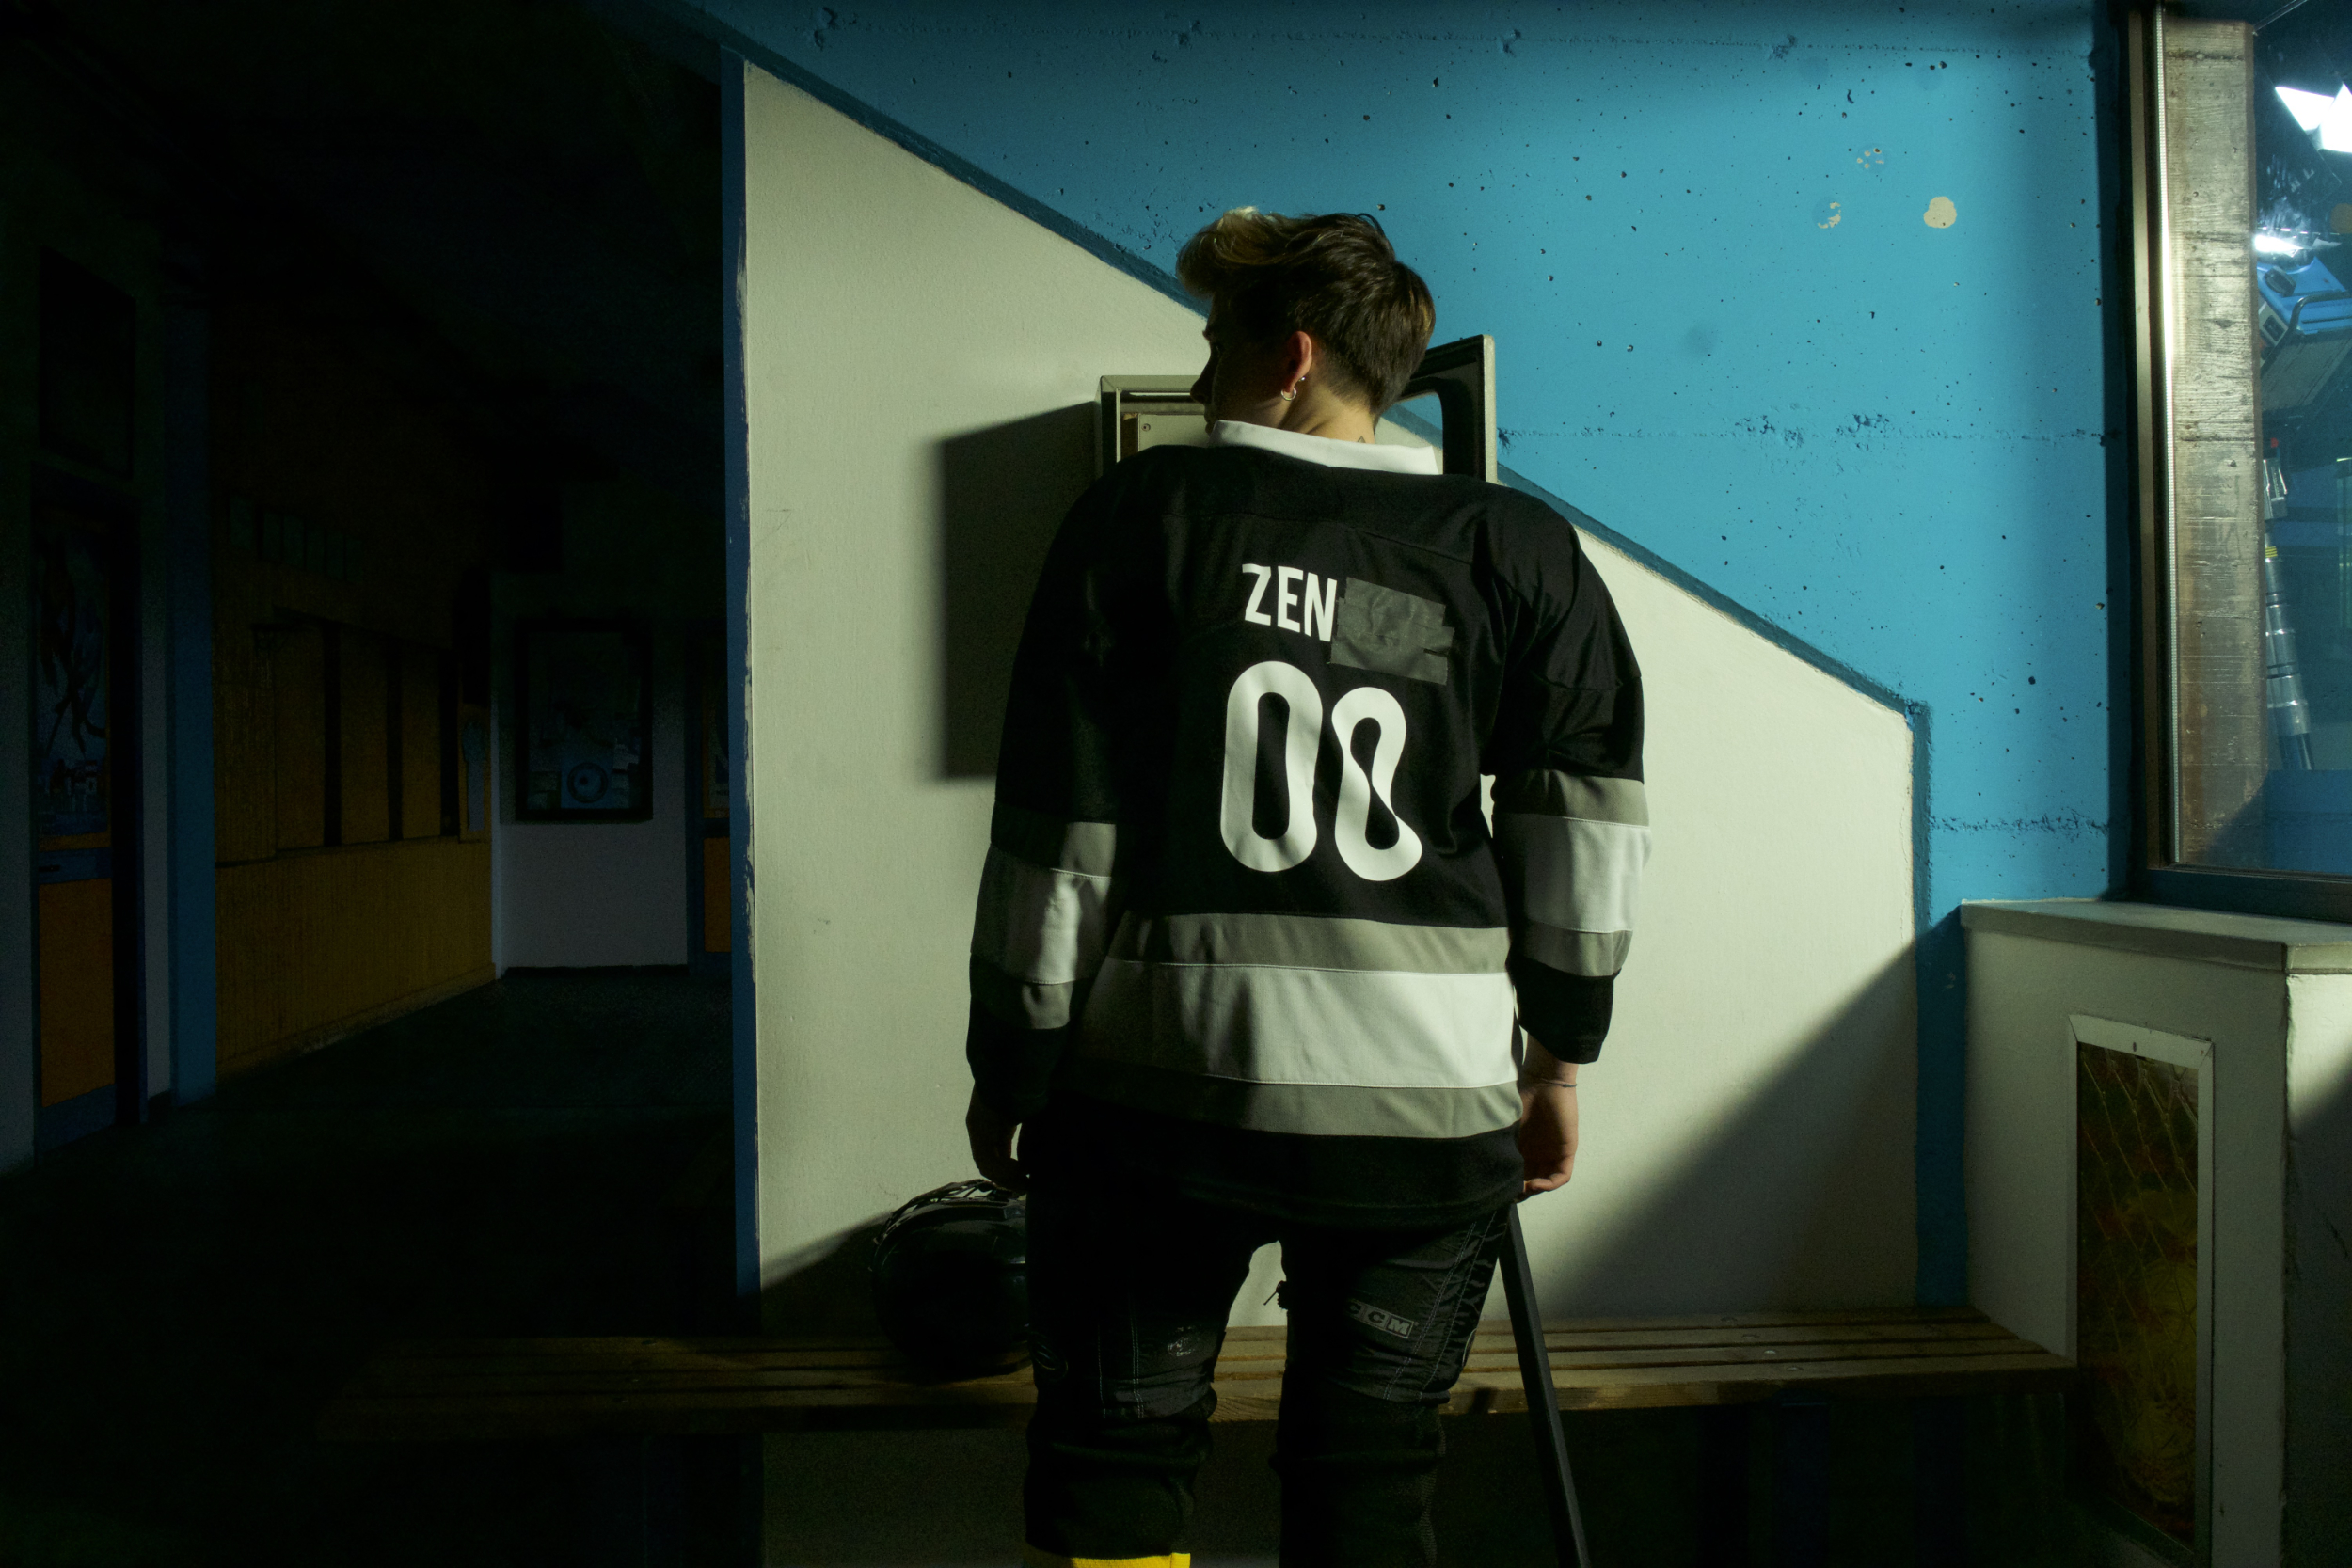 protagonista del film zen sul ghiaccio sottile visto da dietro in uno spogliatoio con la divisa da hockey